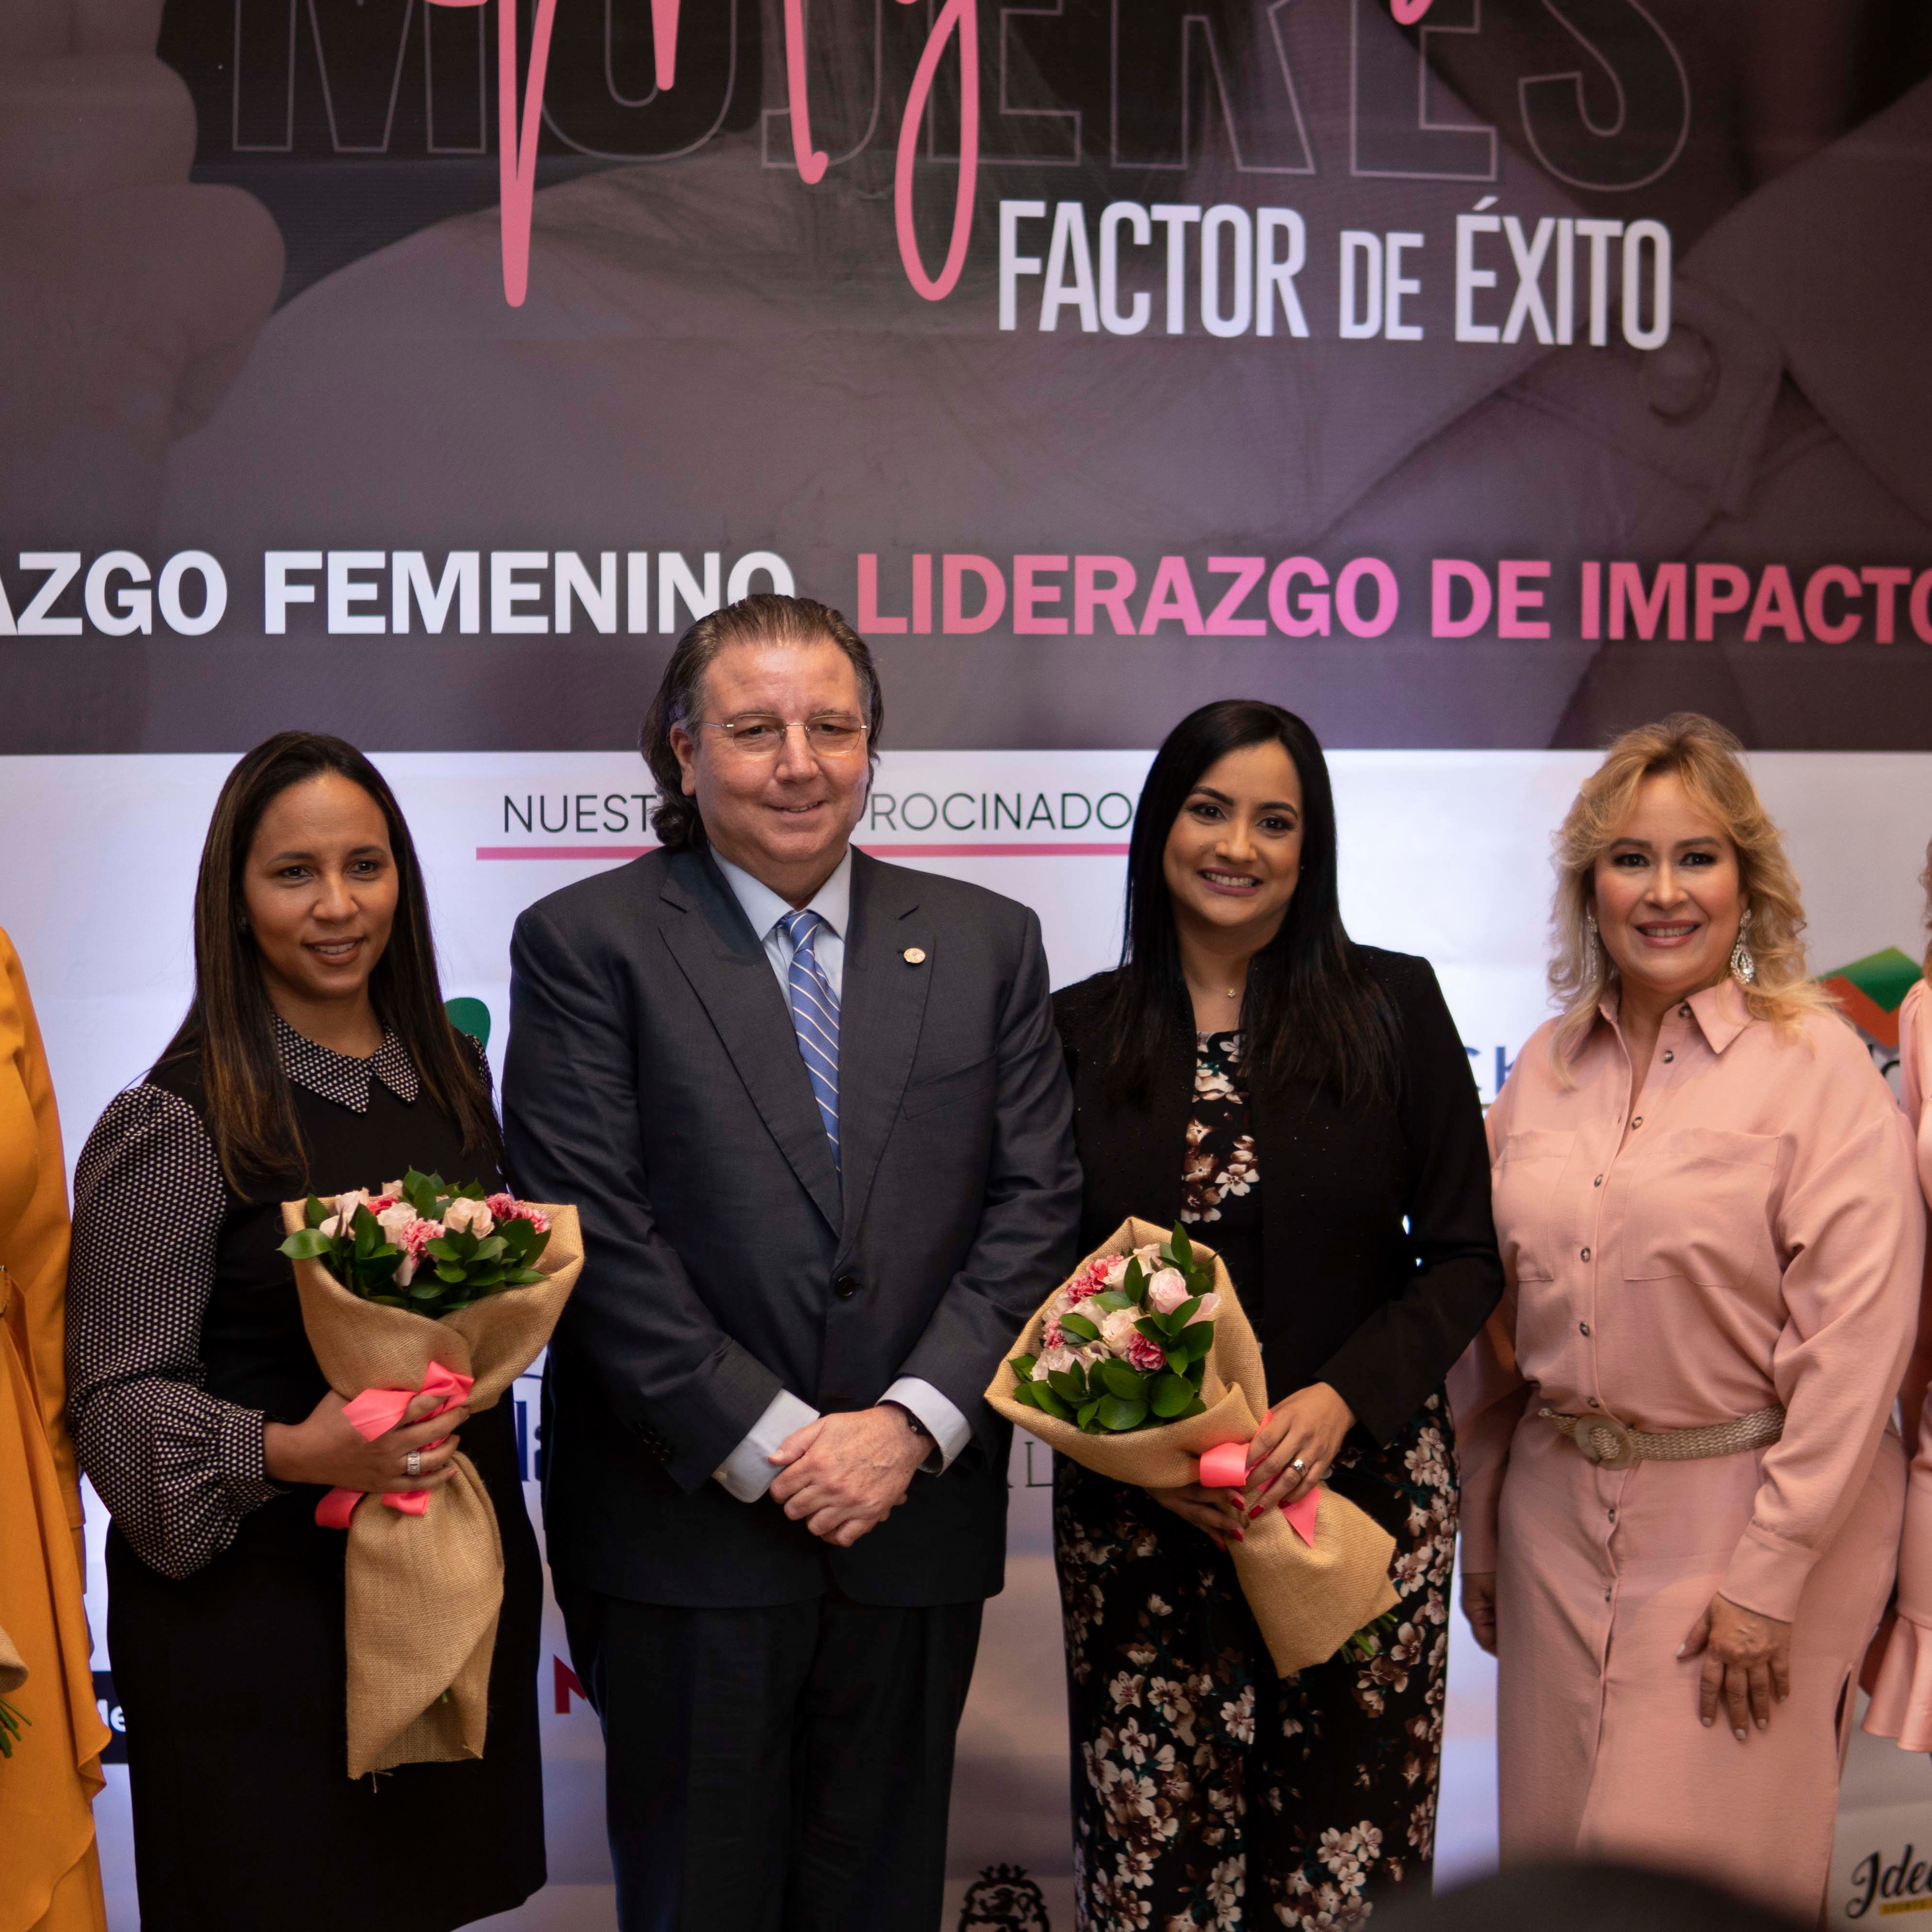 Mujeres Factor de Éxito: Liderazgo femenino, liderazgo de impacto Portada